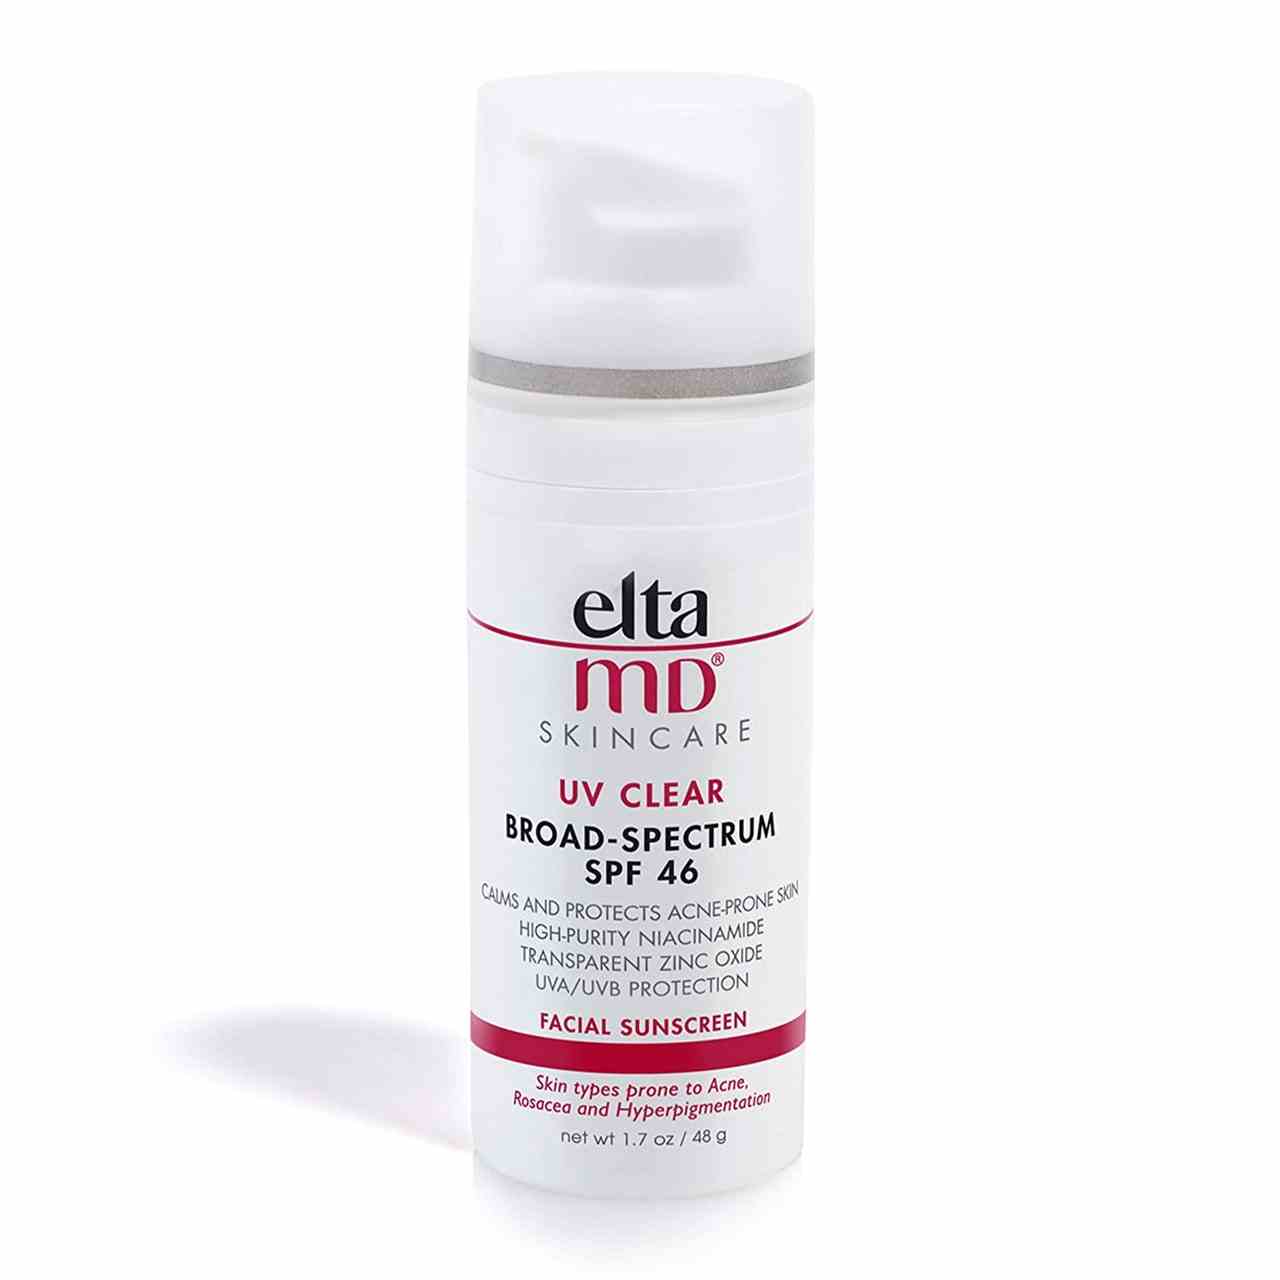 Eine rot-weiße Pumpflasche mit durchsichtiger, matter Kappe des EltaMD UV Clear Facial Sunscreen SPF 46 auf weißem Hintergrund